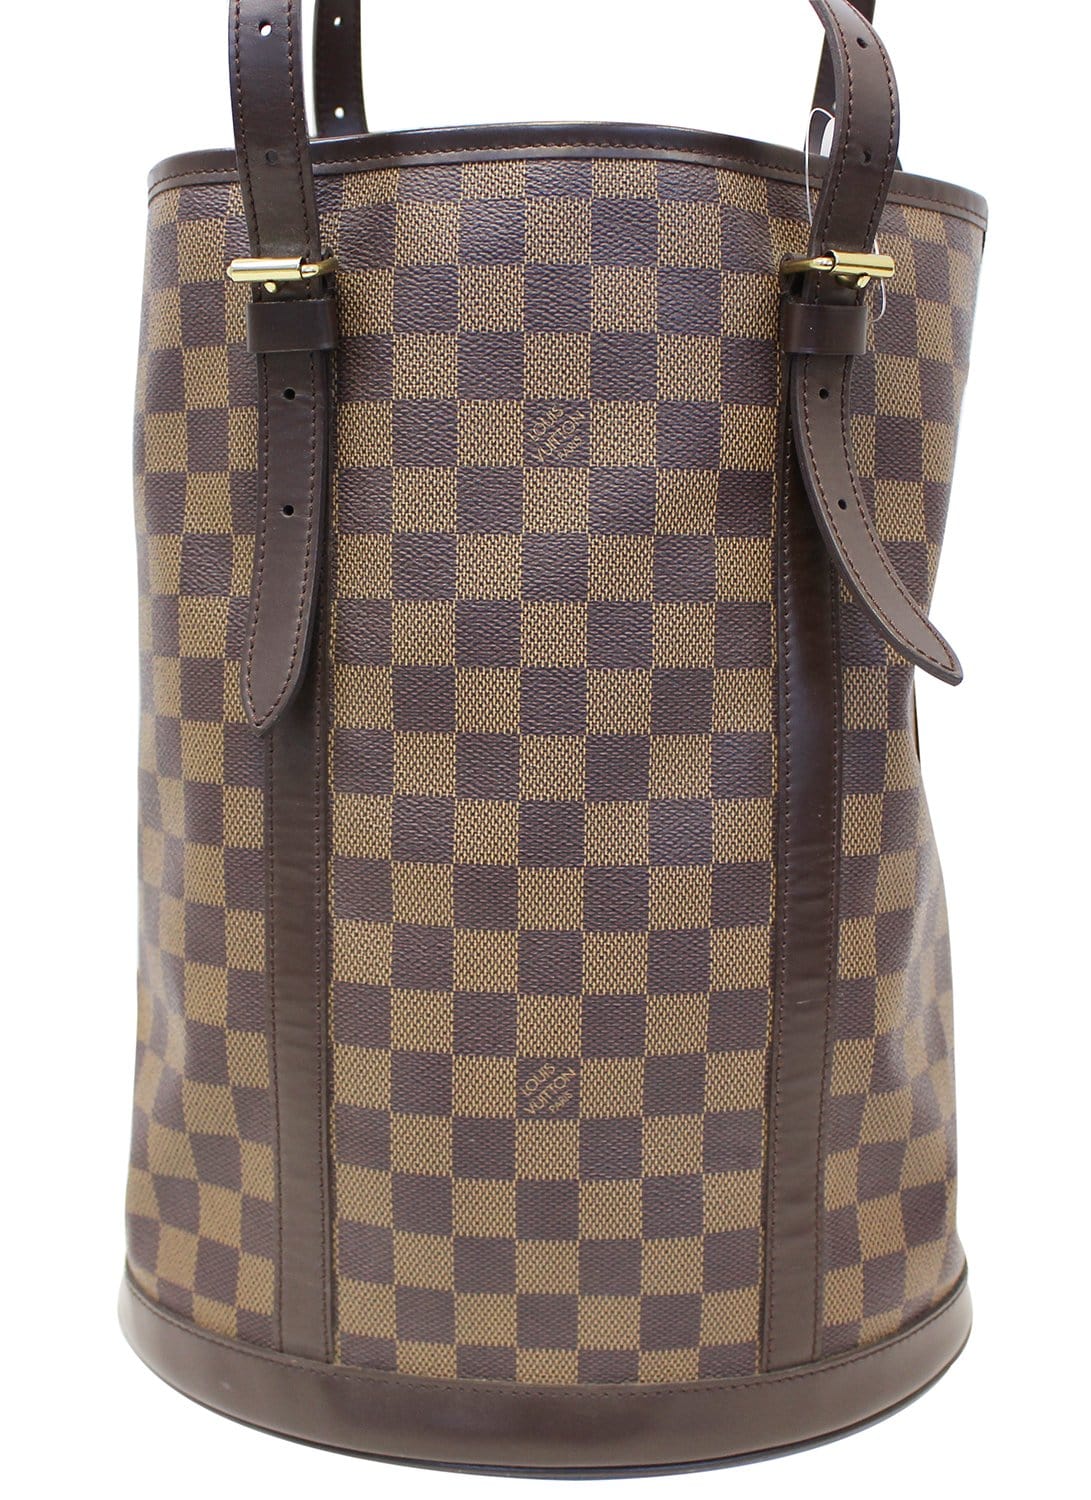 LOUIS VUITTON Damier Ebene Bucket Large Special Order Shoulder Bag